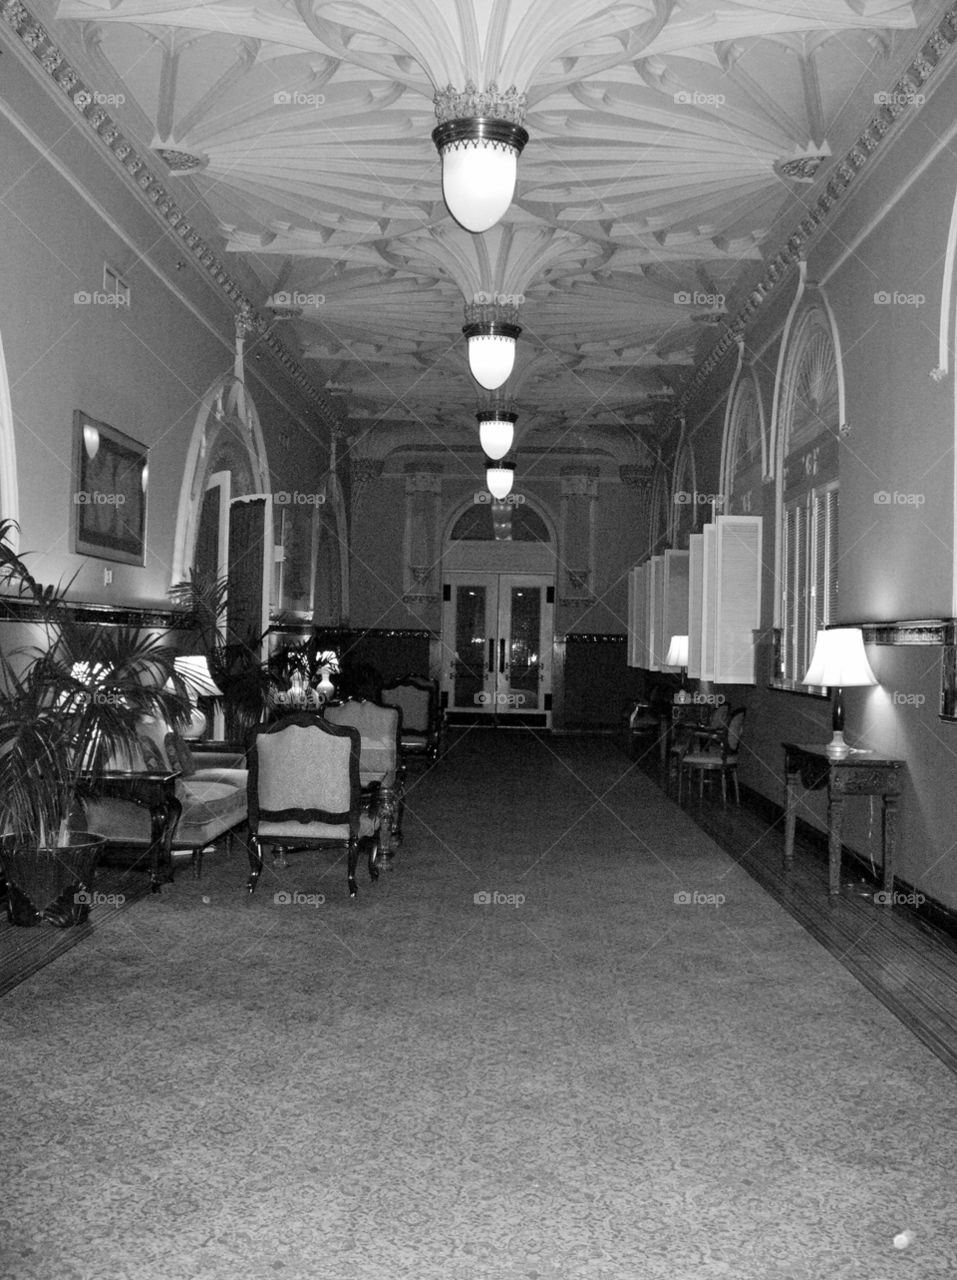 Hotel meeting room. Vintage room in hotel.  St Louis.